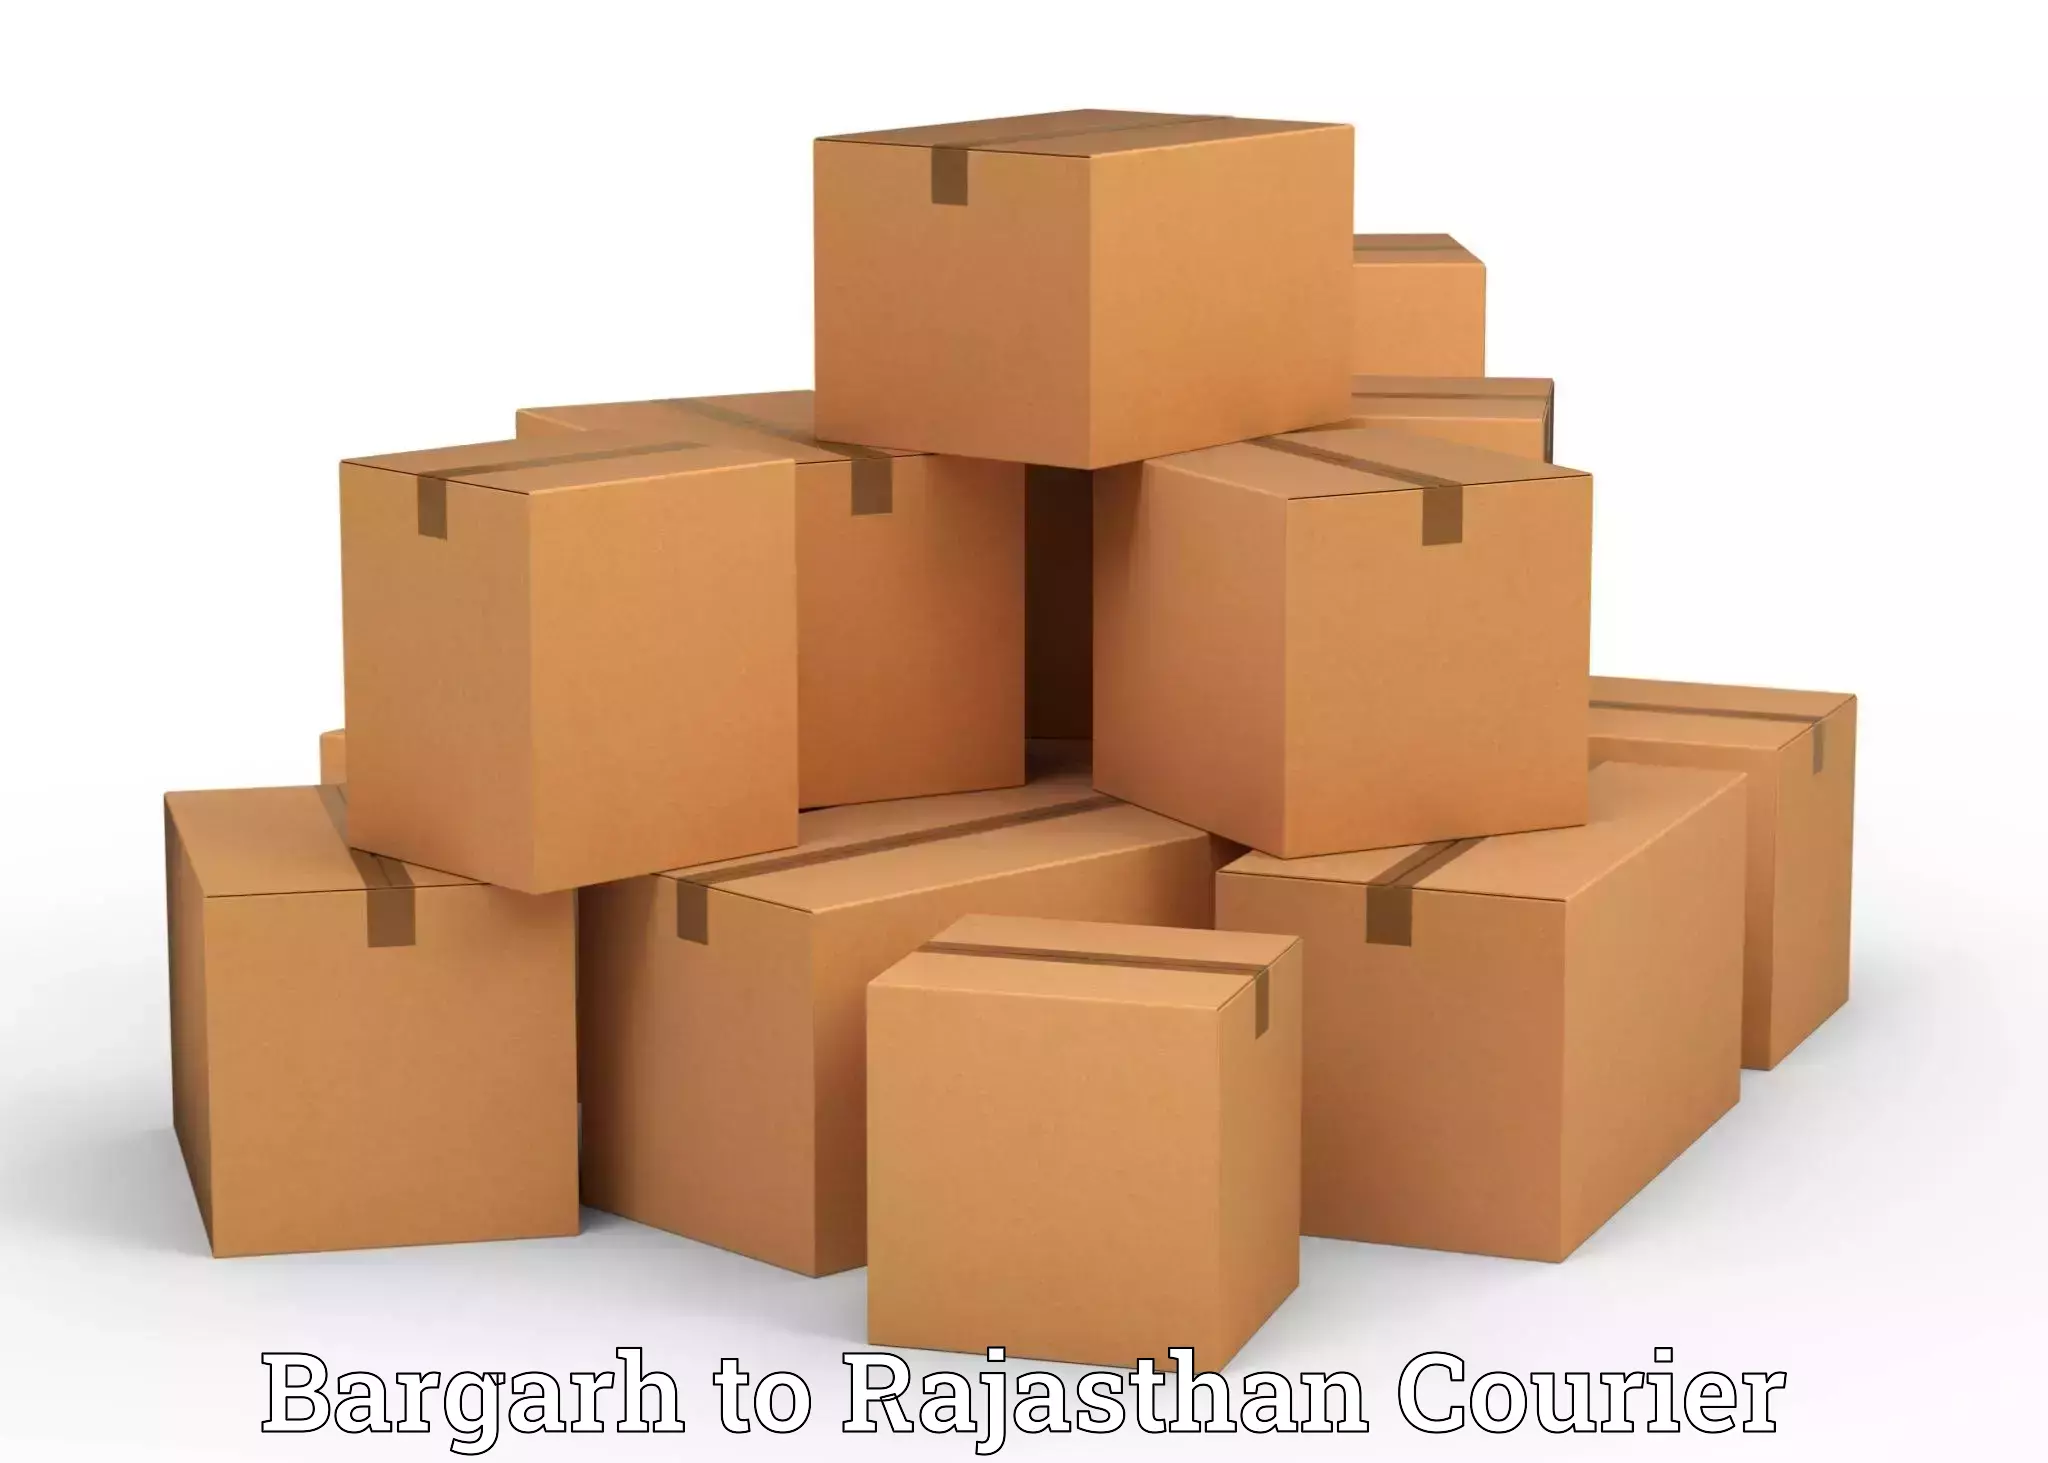 Professional packing and transport Bargarh to Bhilwara